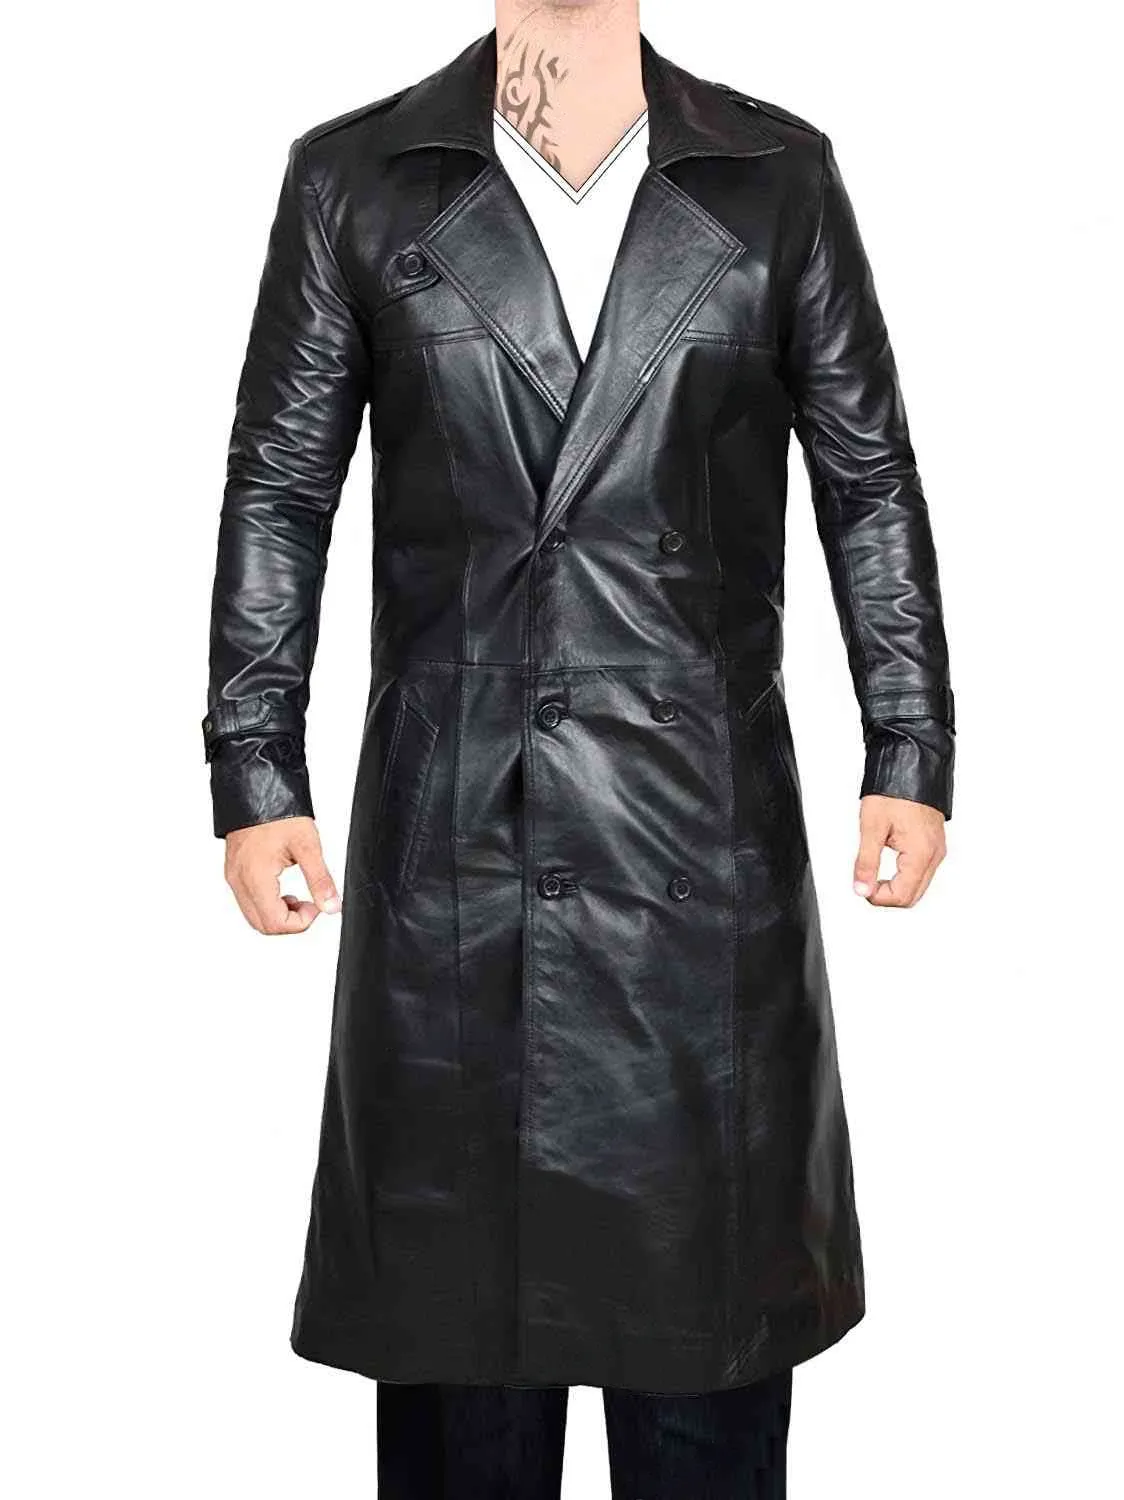 Black men leather coat transformed